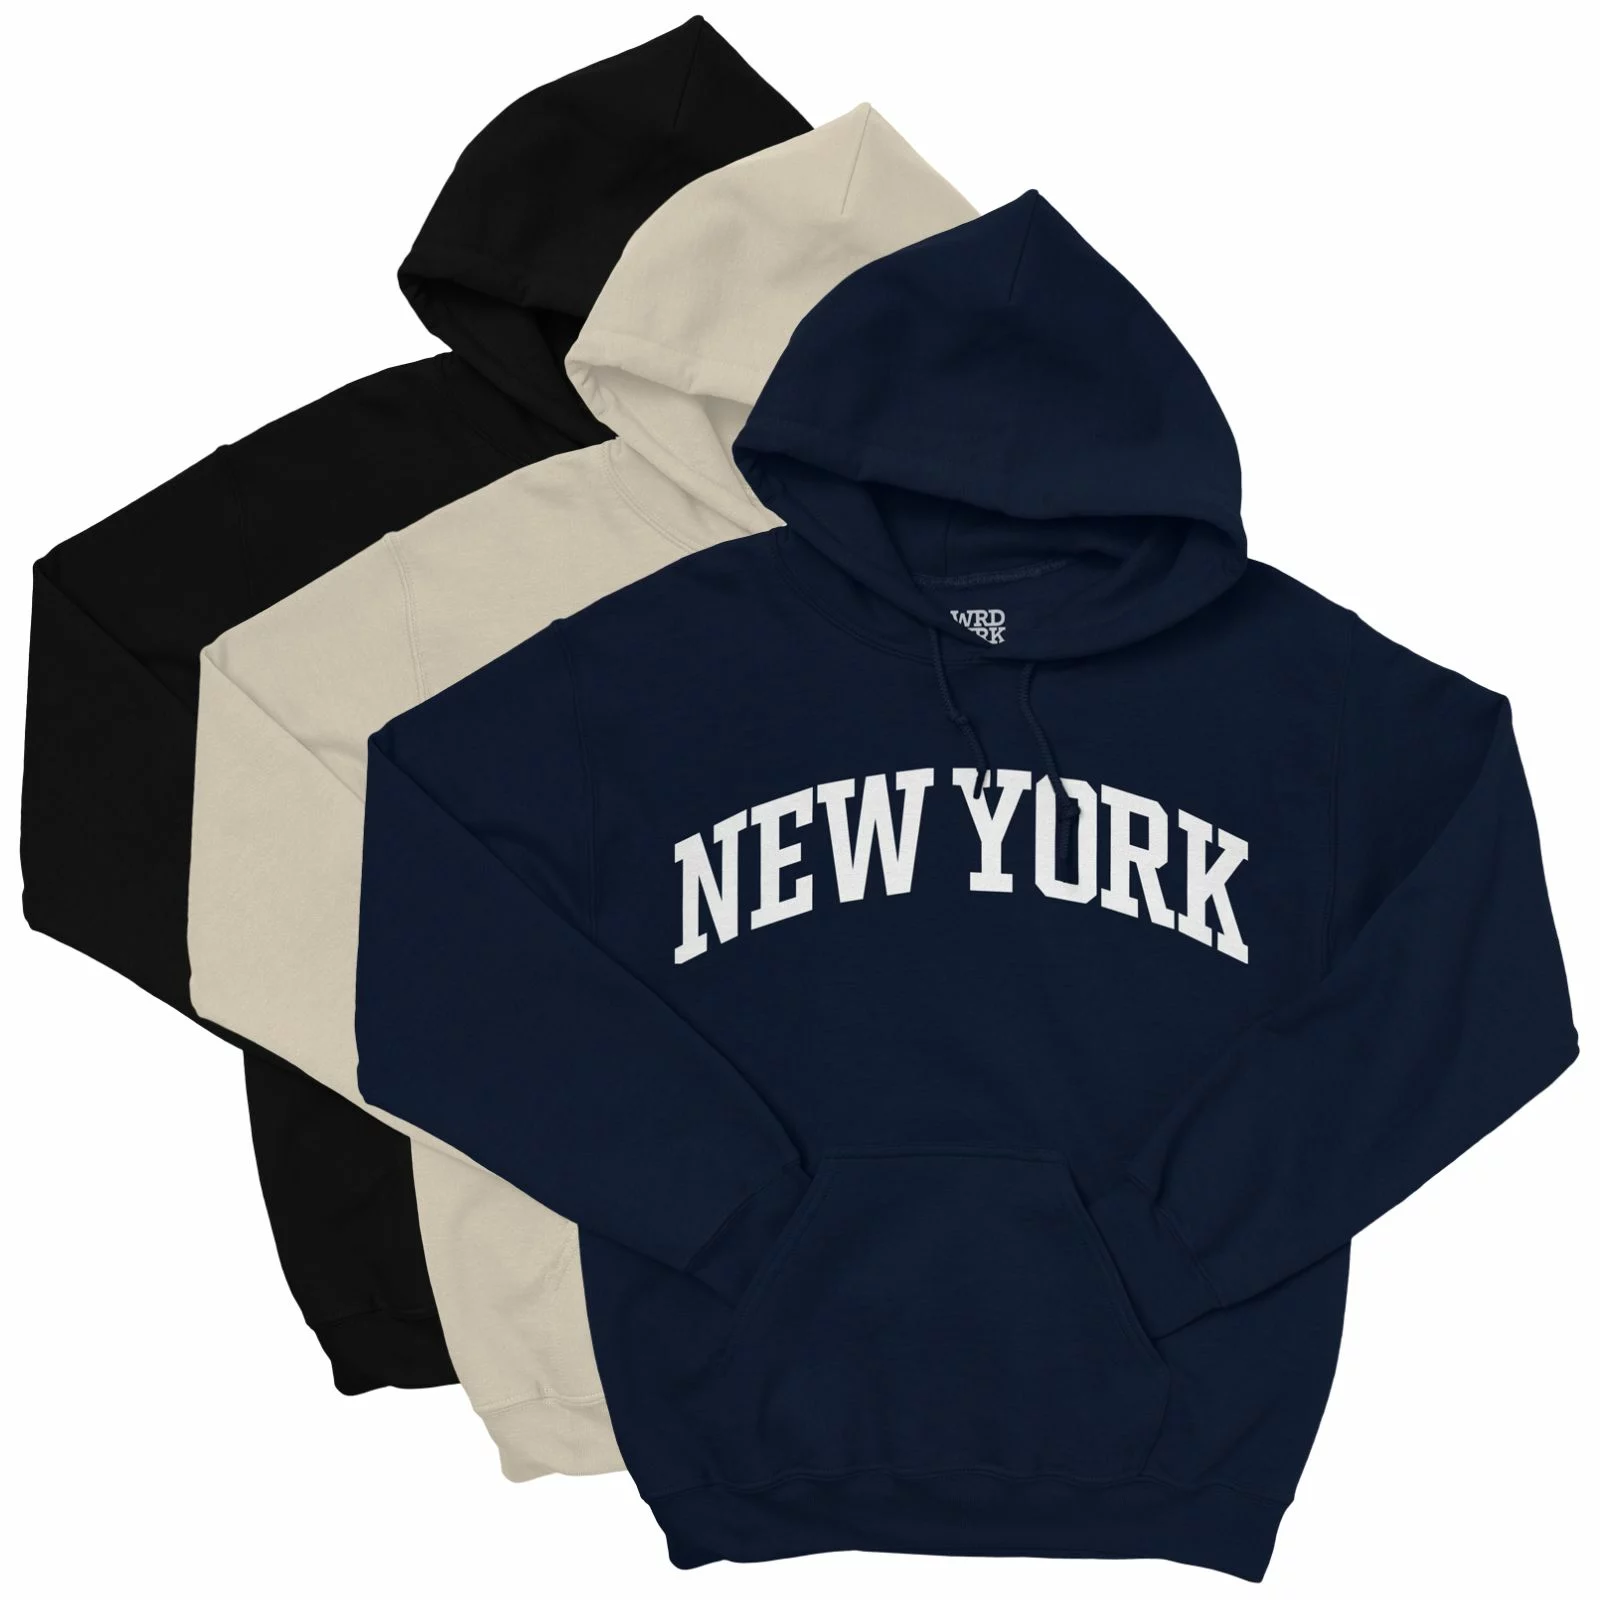 New York Hoodie - College Style Pullover Hooded Sweatshirt - Wrdmrk (Cream, 4XL)